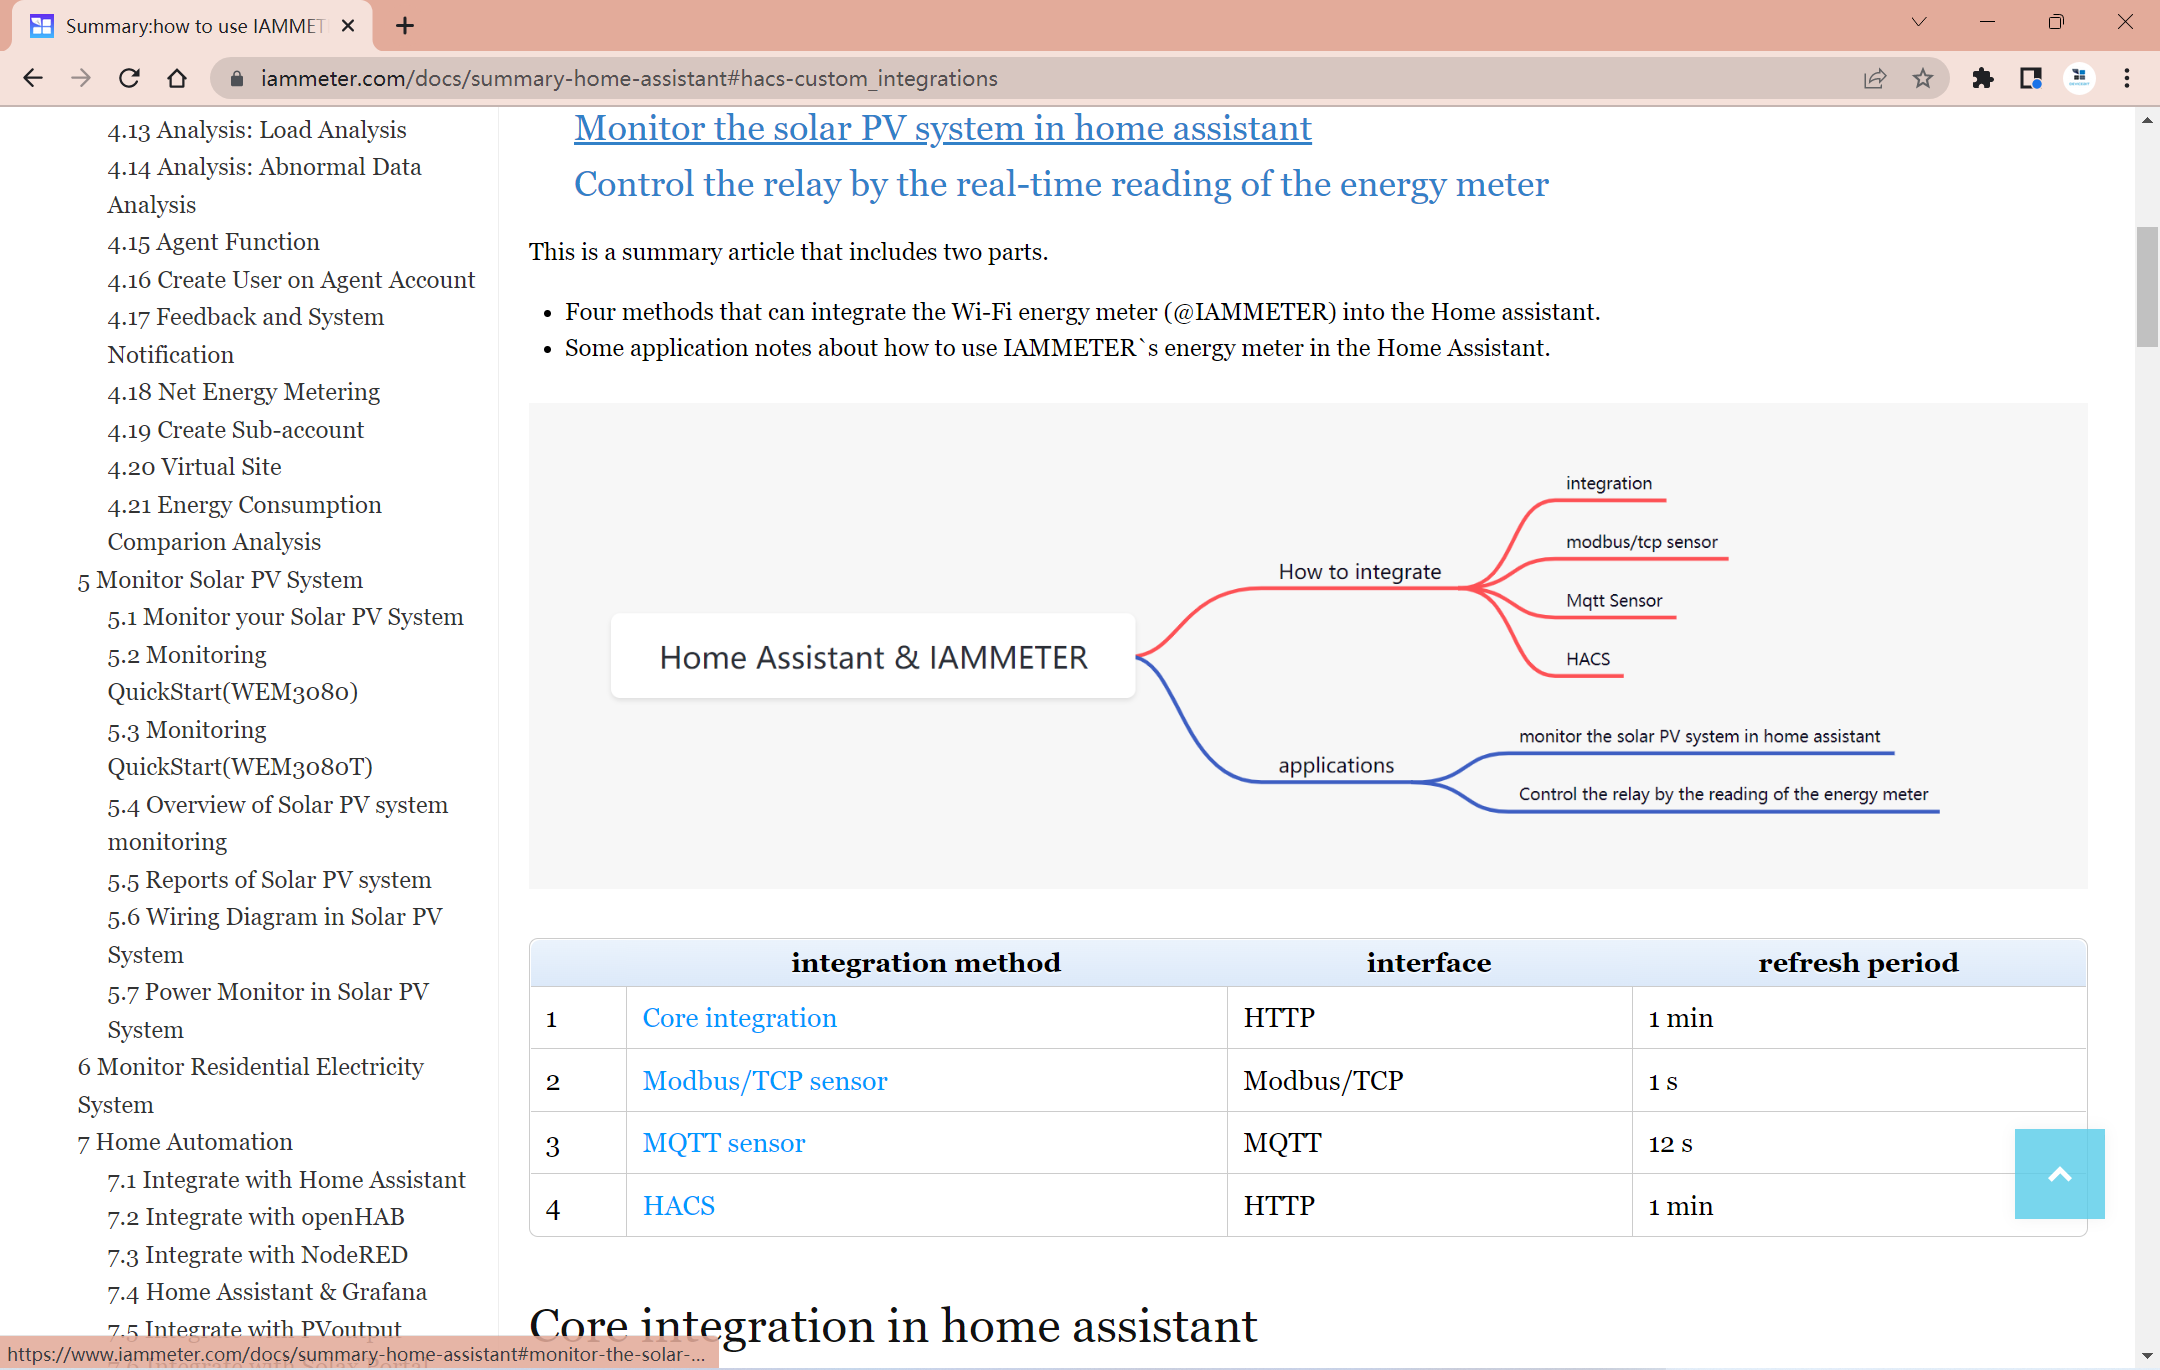 résumé : comment utiliser le compteur d'énergie Wi-Fi d'IAMMETER dans l'assistant domestique